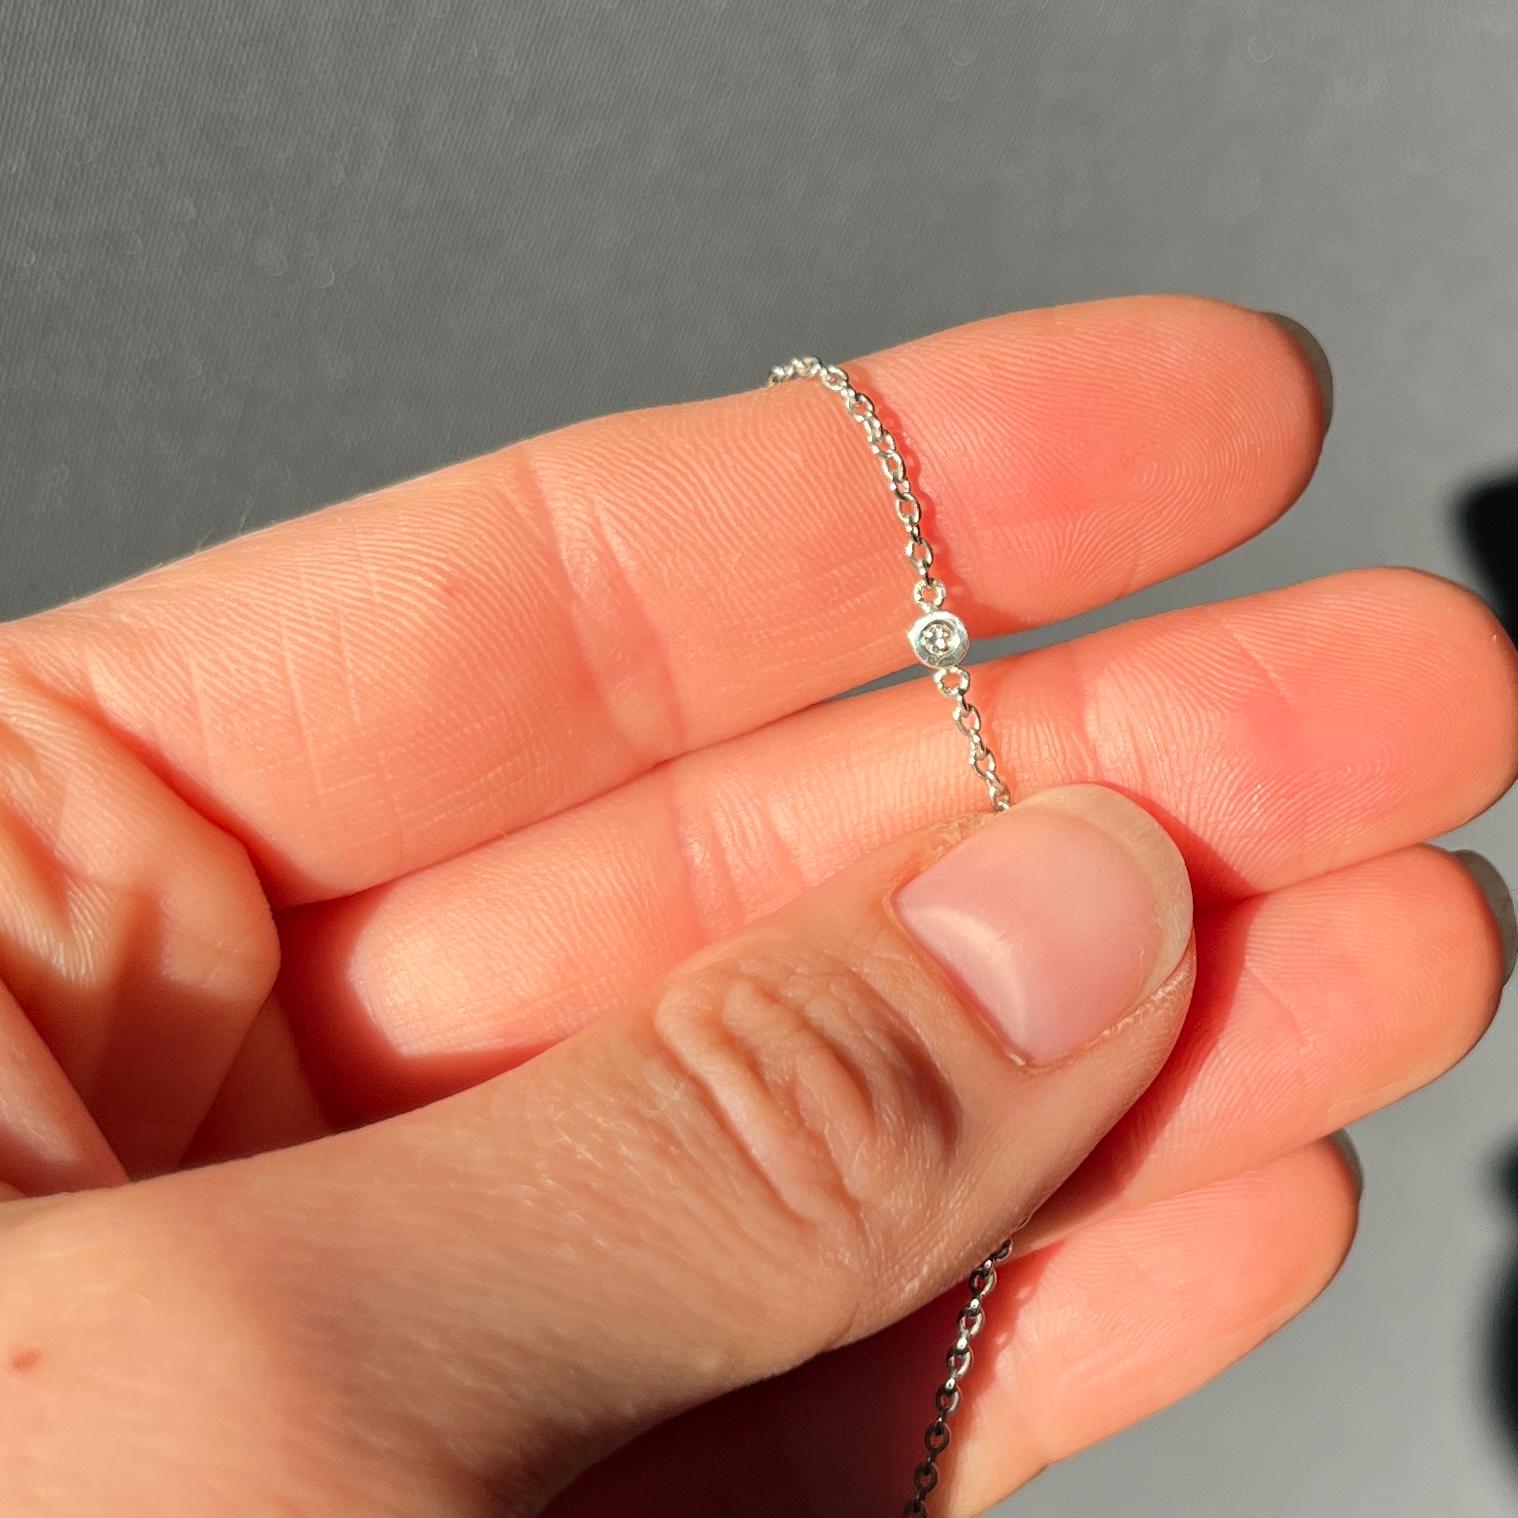 Eine elegante, mit Diamanten besetzte Art-Déco-Kette aus Platin. Jeder Diamant sitzt in einem zarten Kreis aus Platin. Die Diamanten sind insgesamt 328pts und sind hell und fügen Sie die perfekte funkelnde zu dieser Kette! 

Länge der Halskette: